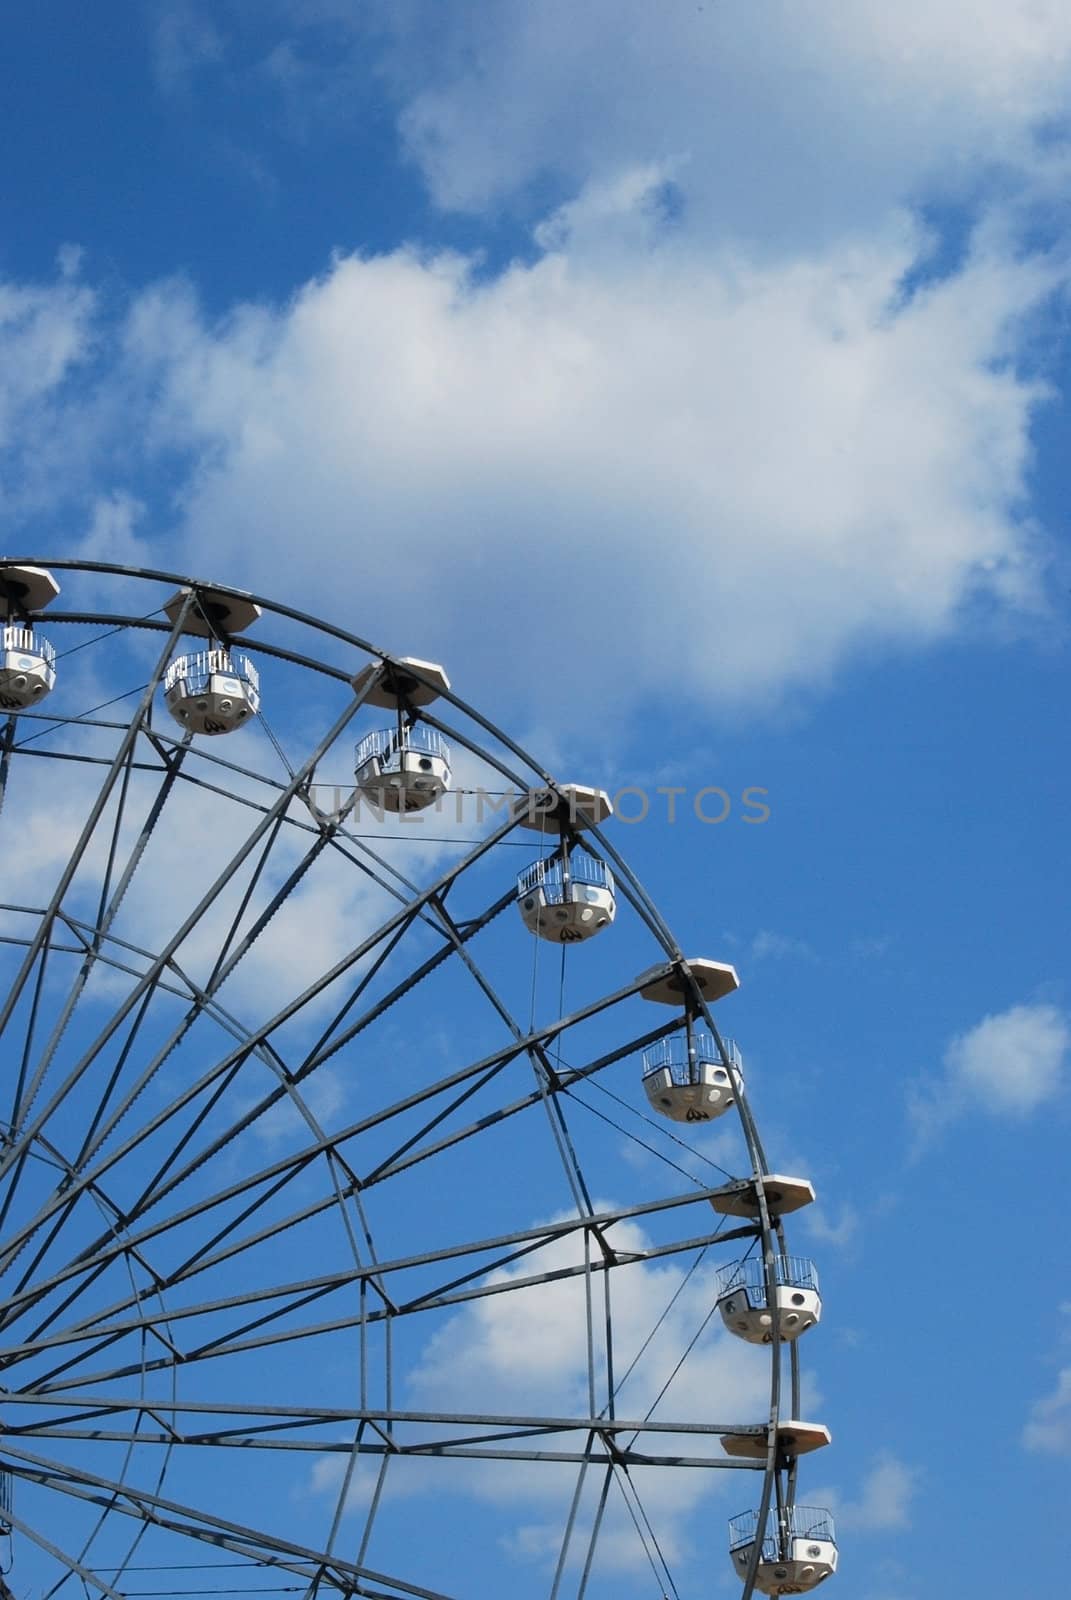 Part of Ferris wheel by varbenov